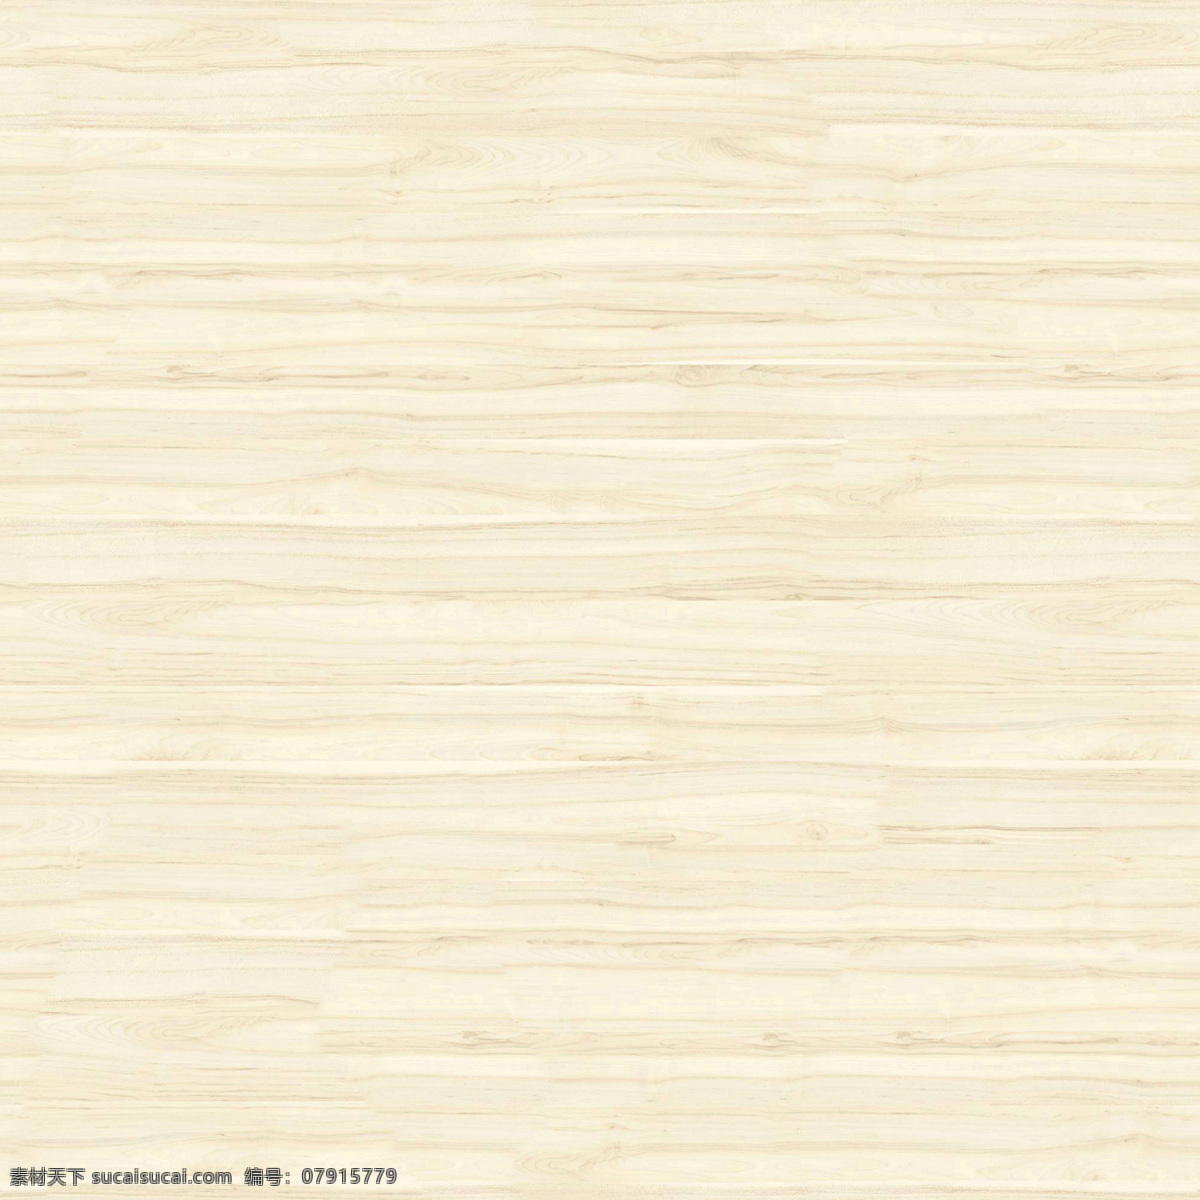 木纹地板 木 木纹 地板 木材 木板 表面纹理 装饰 建筑